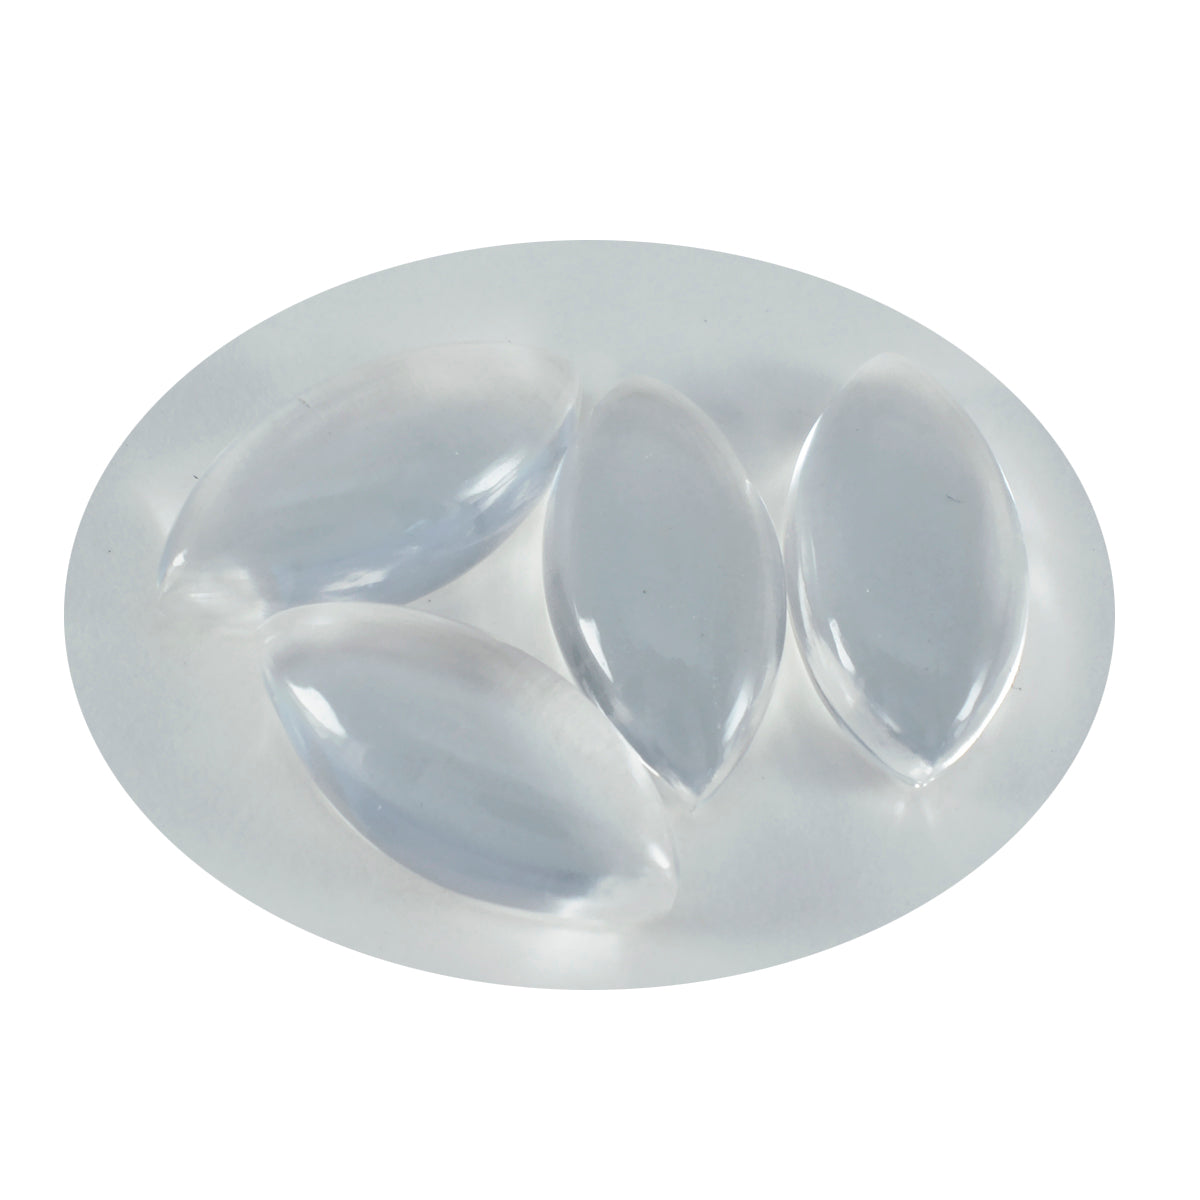 riyogems 1pc cabochon di quarzo di cristallo bianco 10x20 mm forma marquise gemma sciolta di qualità gradevole